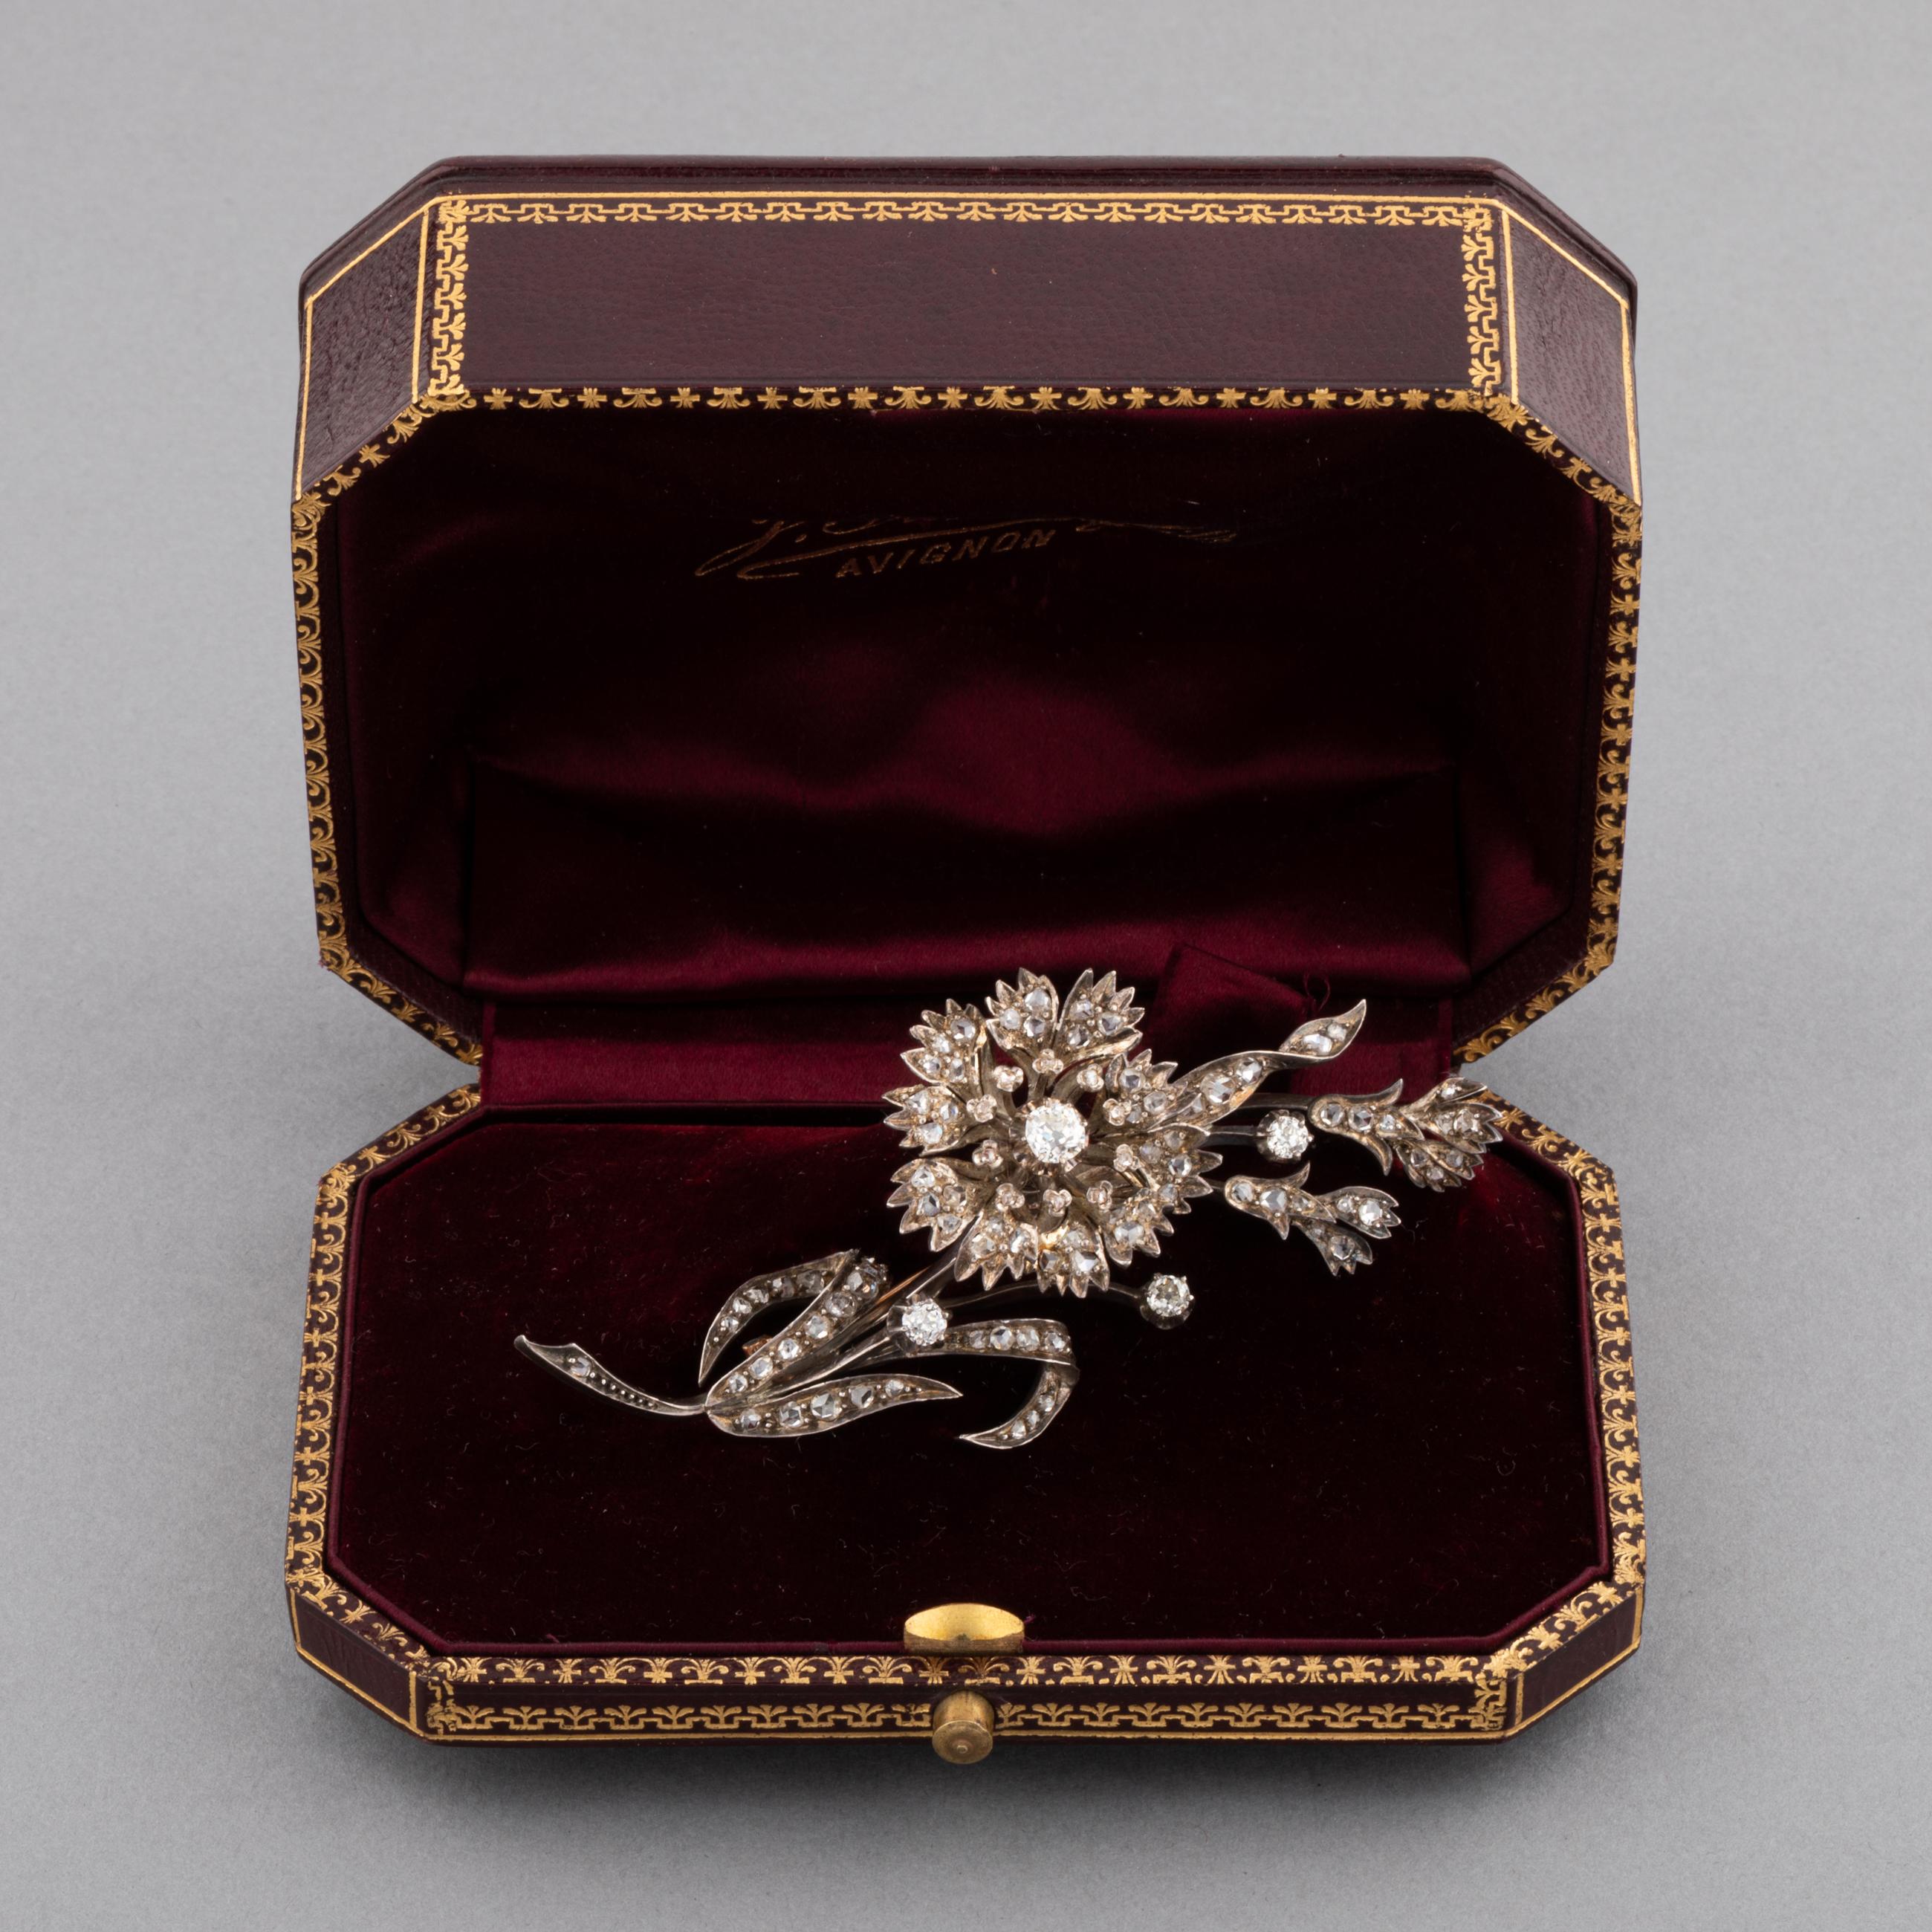 Une très belle broche ancienne, fabriquée en France vers 1880.
Réalisé en or rose 18k et en argent, serti de diamants de taille européenne ancienne et de taille rose. La plus grosse est de bonne qualité, 0,50 carats environ et de couleur